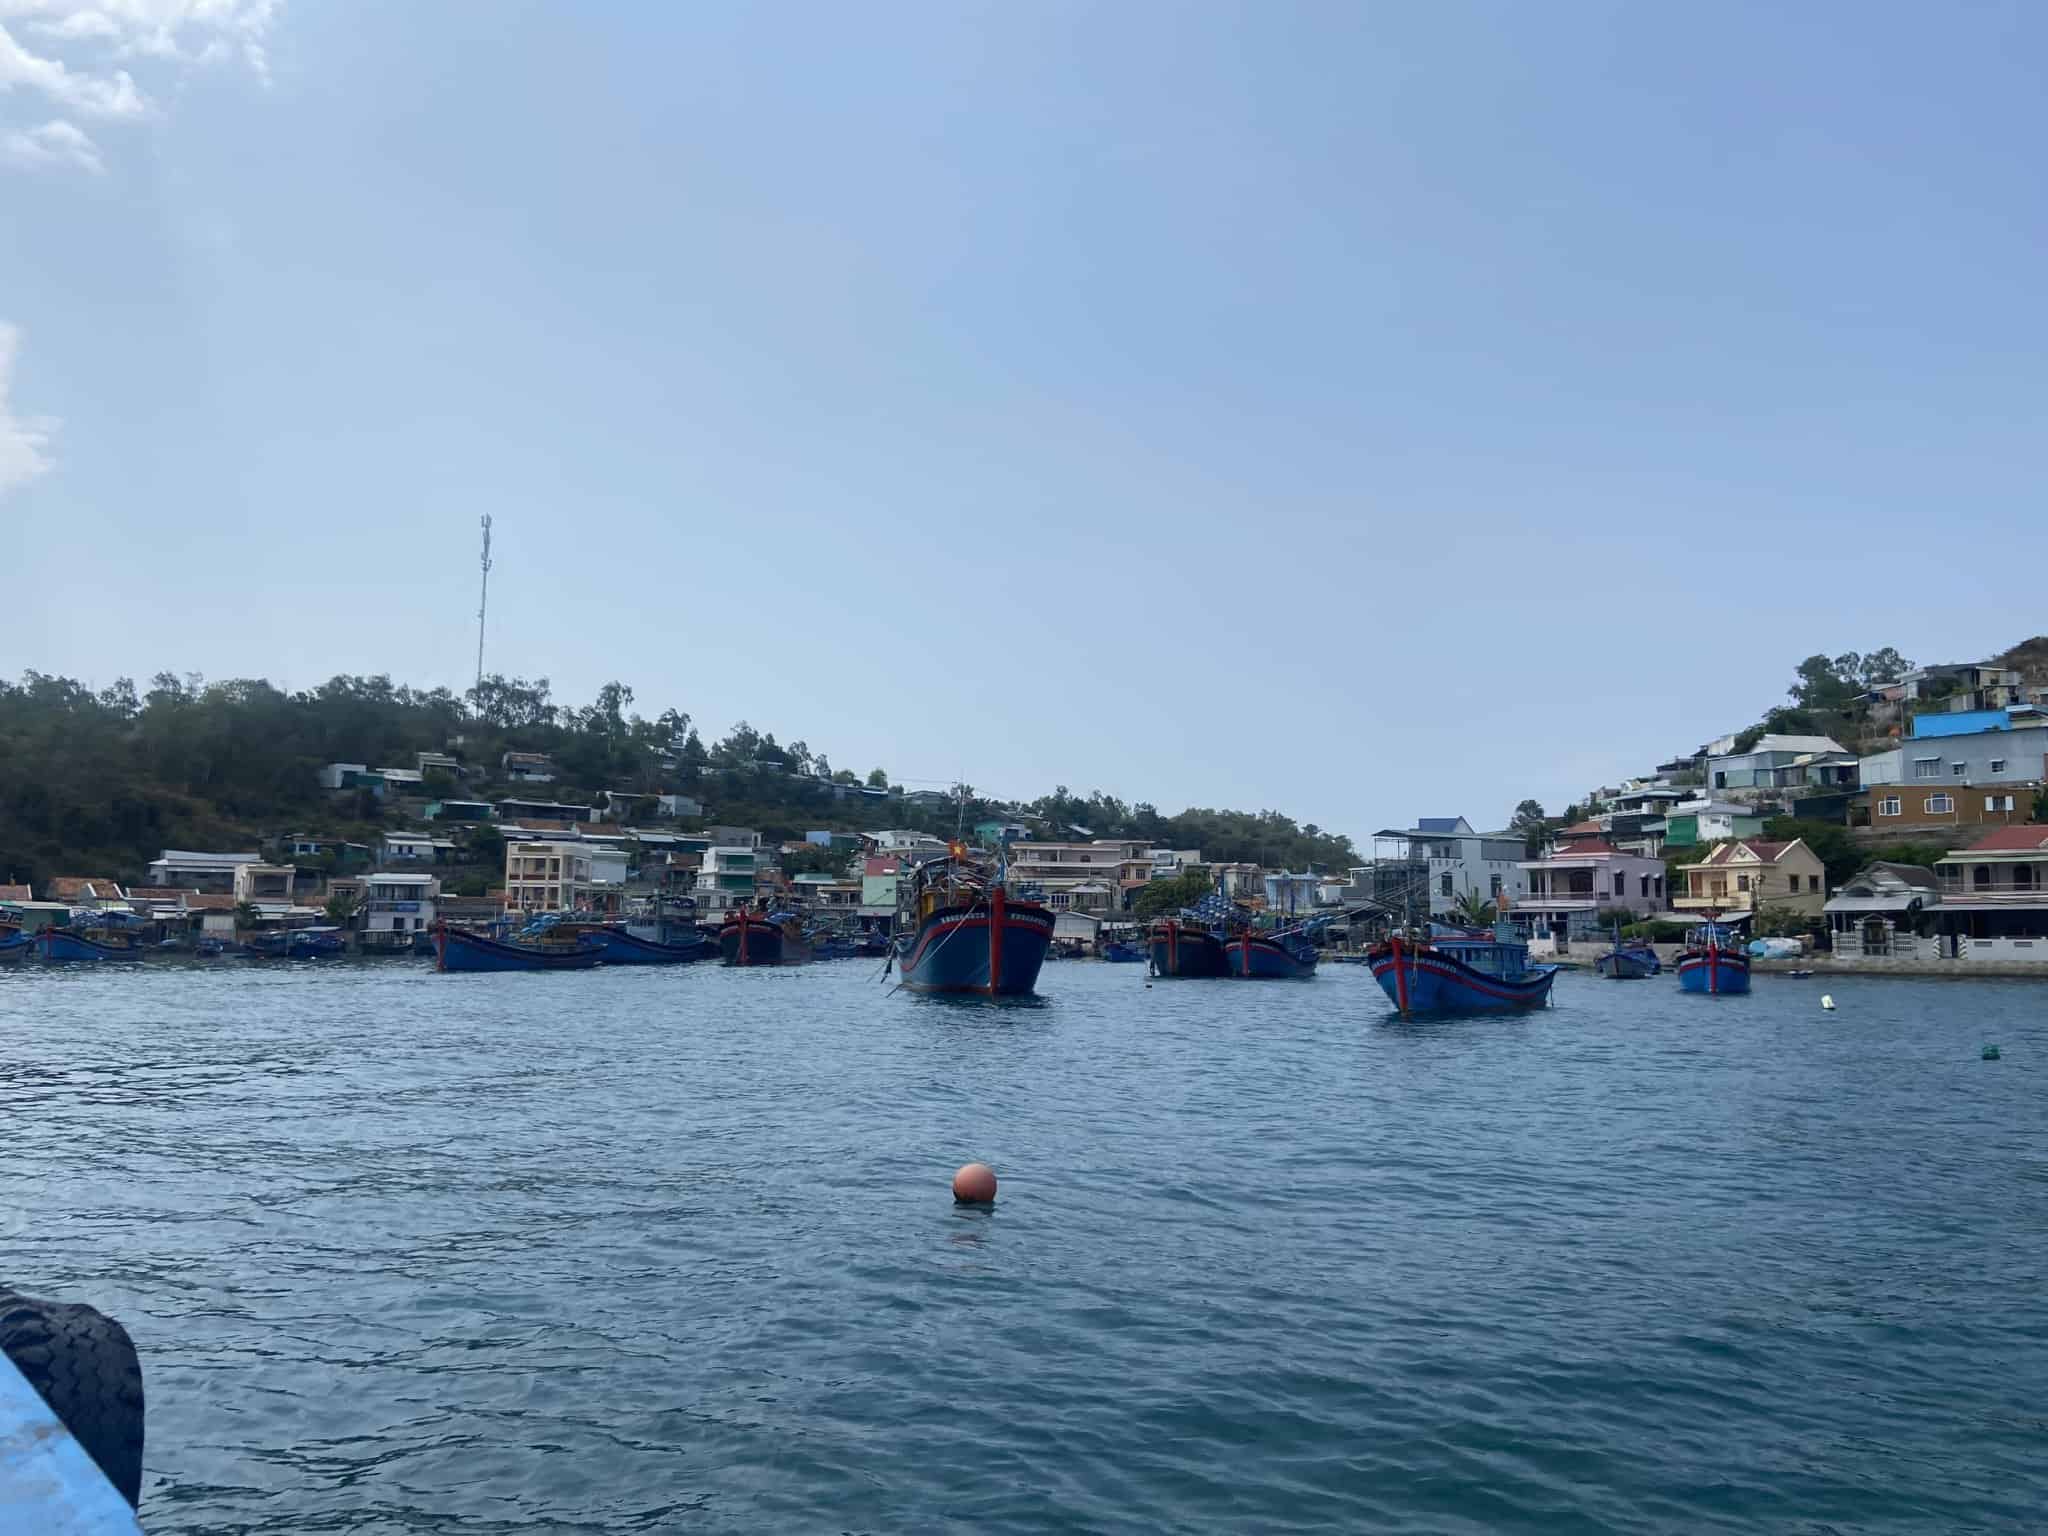 Công ty cấp nước đang thuê thợ lặn để khắc phục vỡ đường ống cấp nước sạch cho đảo Trí Nguyên. Ảnh: Hữu Long 